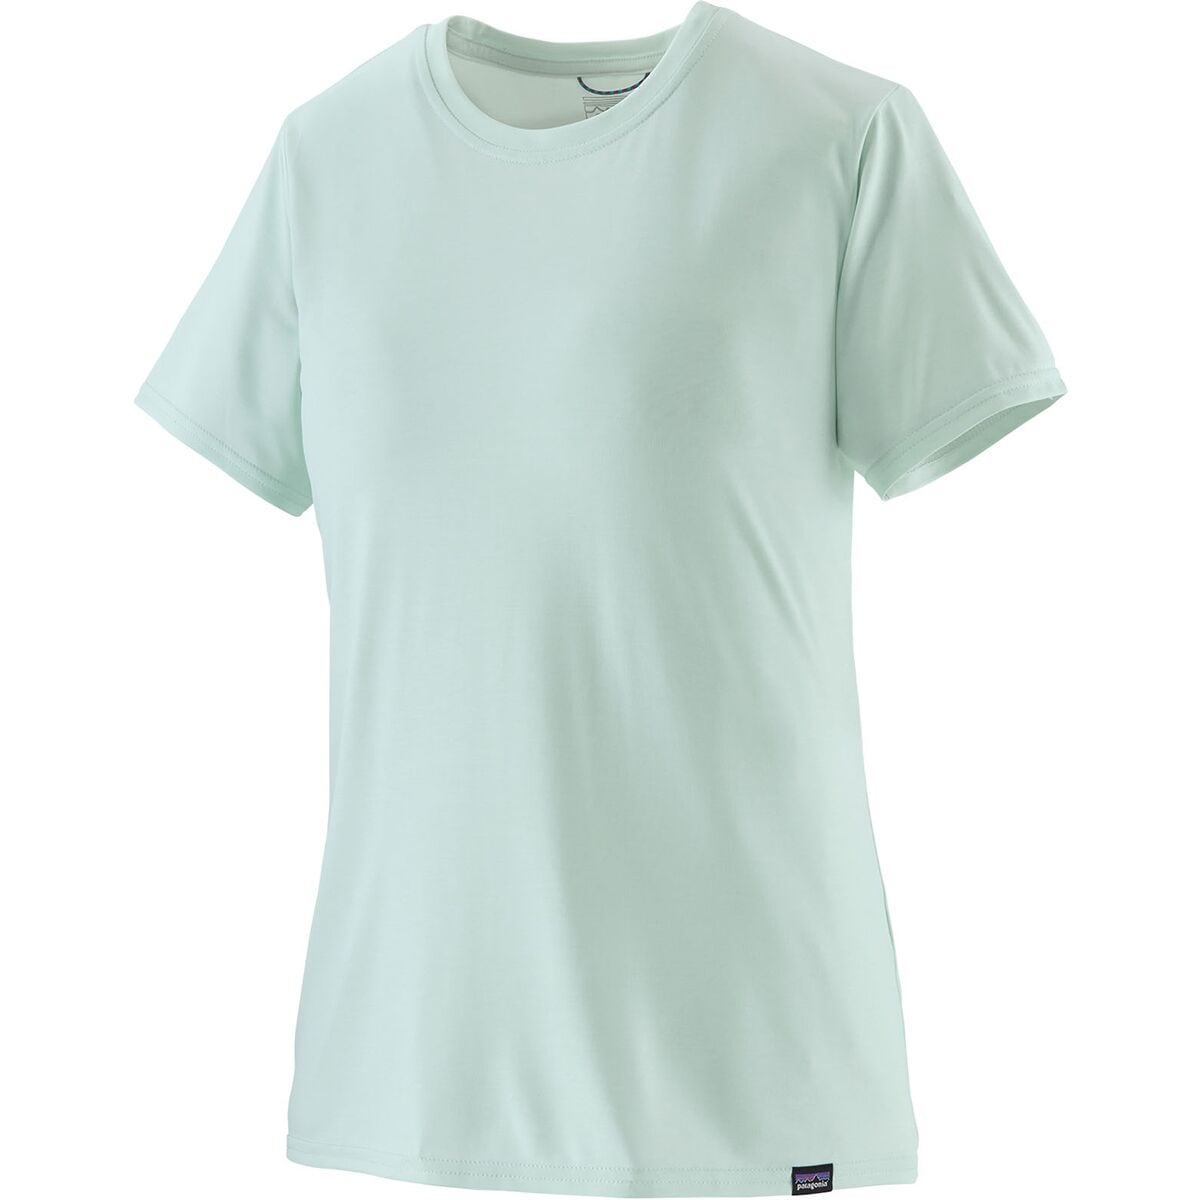 Capilene Cool Daily Short-Sleeve Shirt - Women